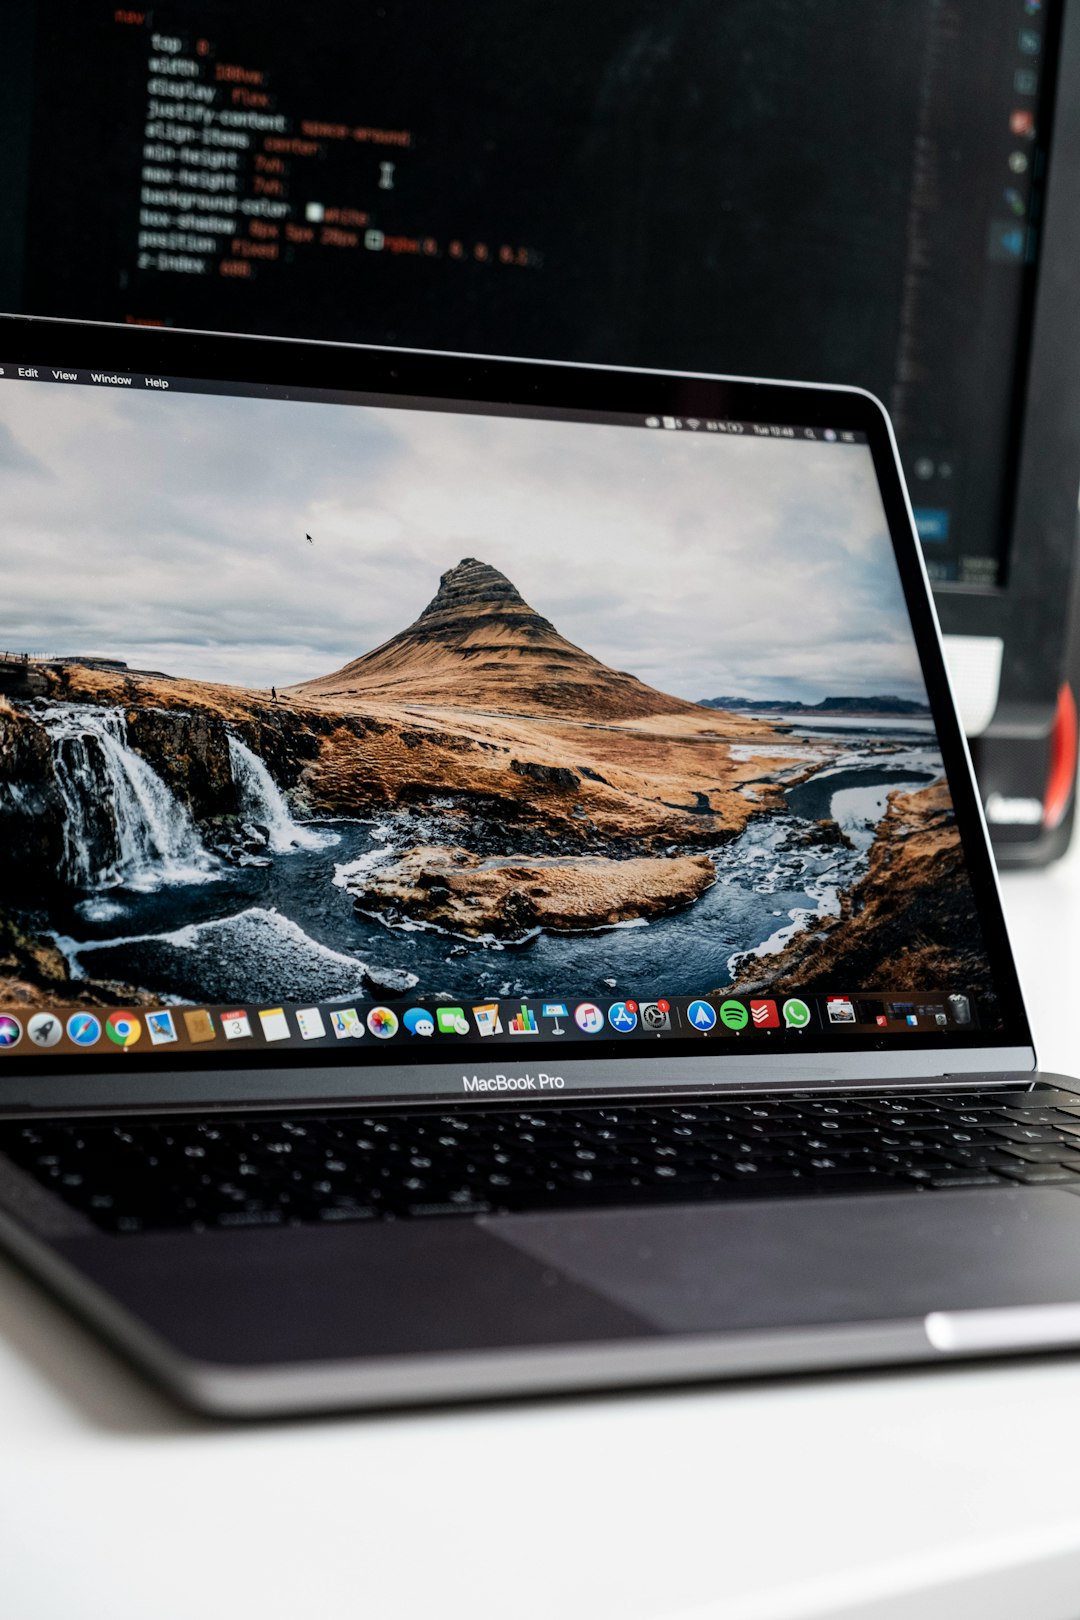 macbook pro displaying brown mountain